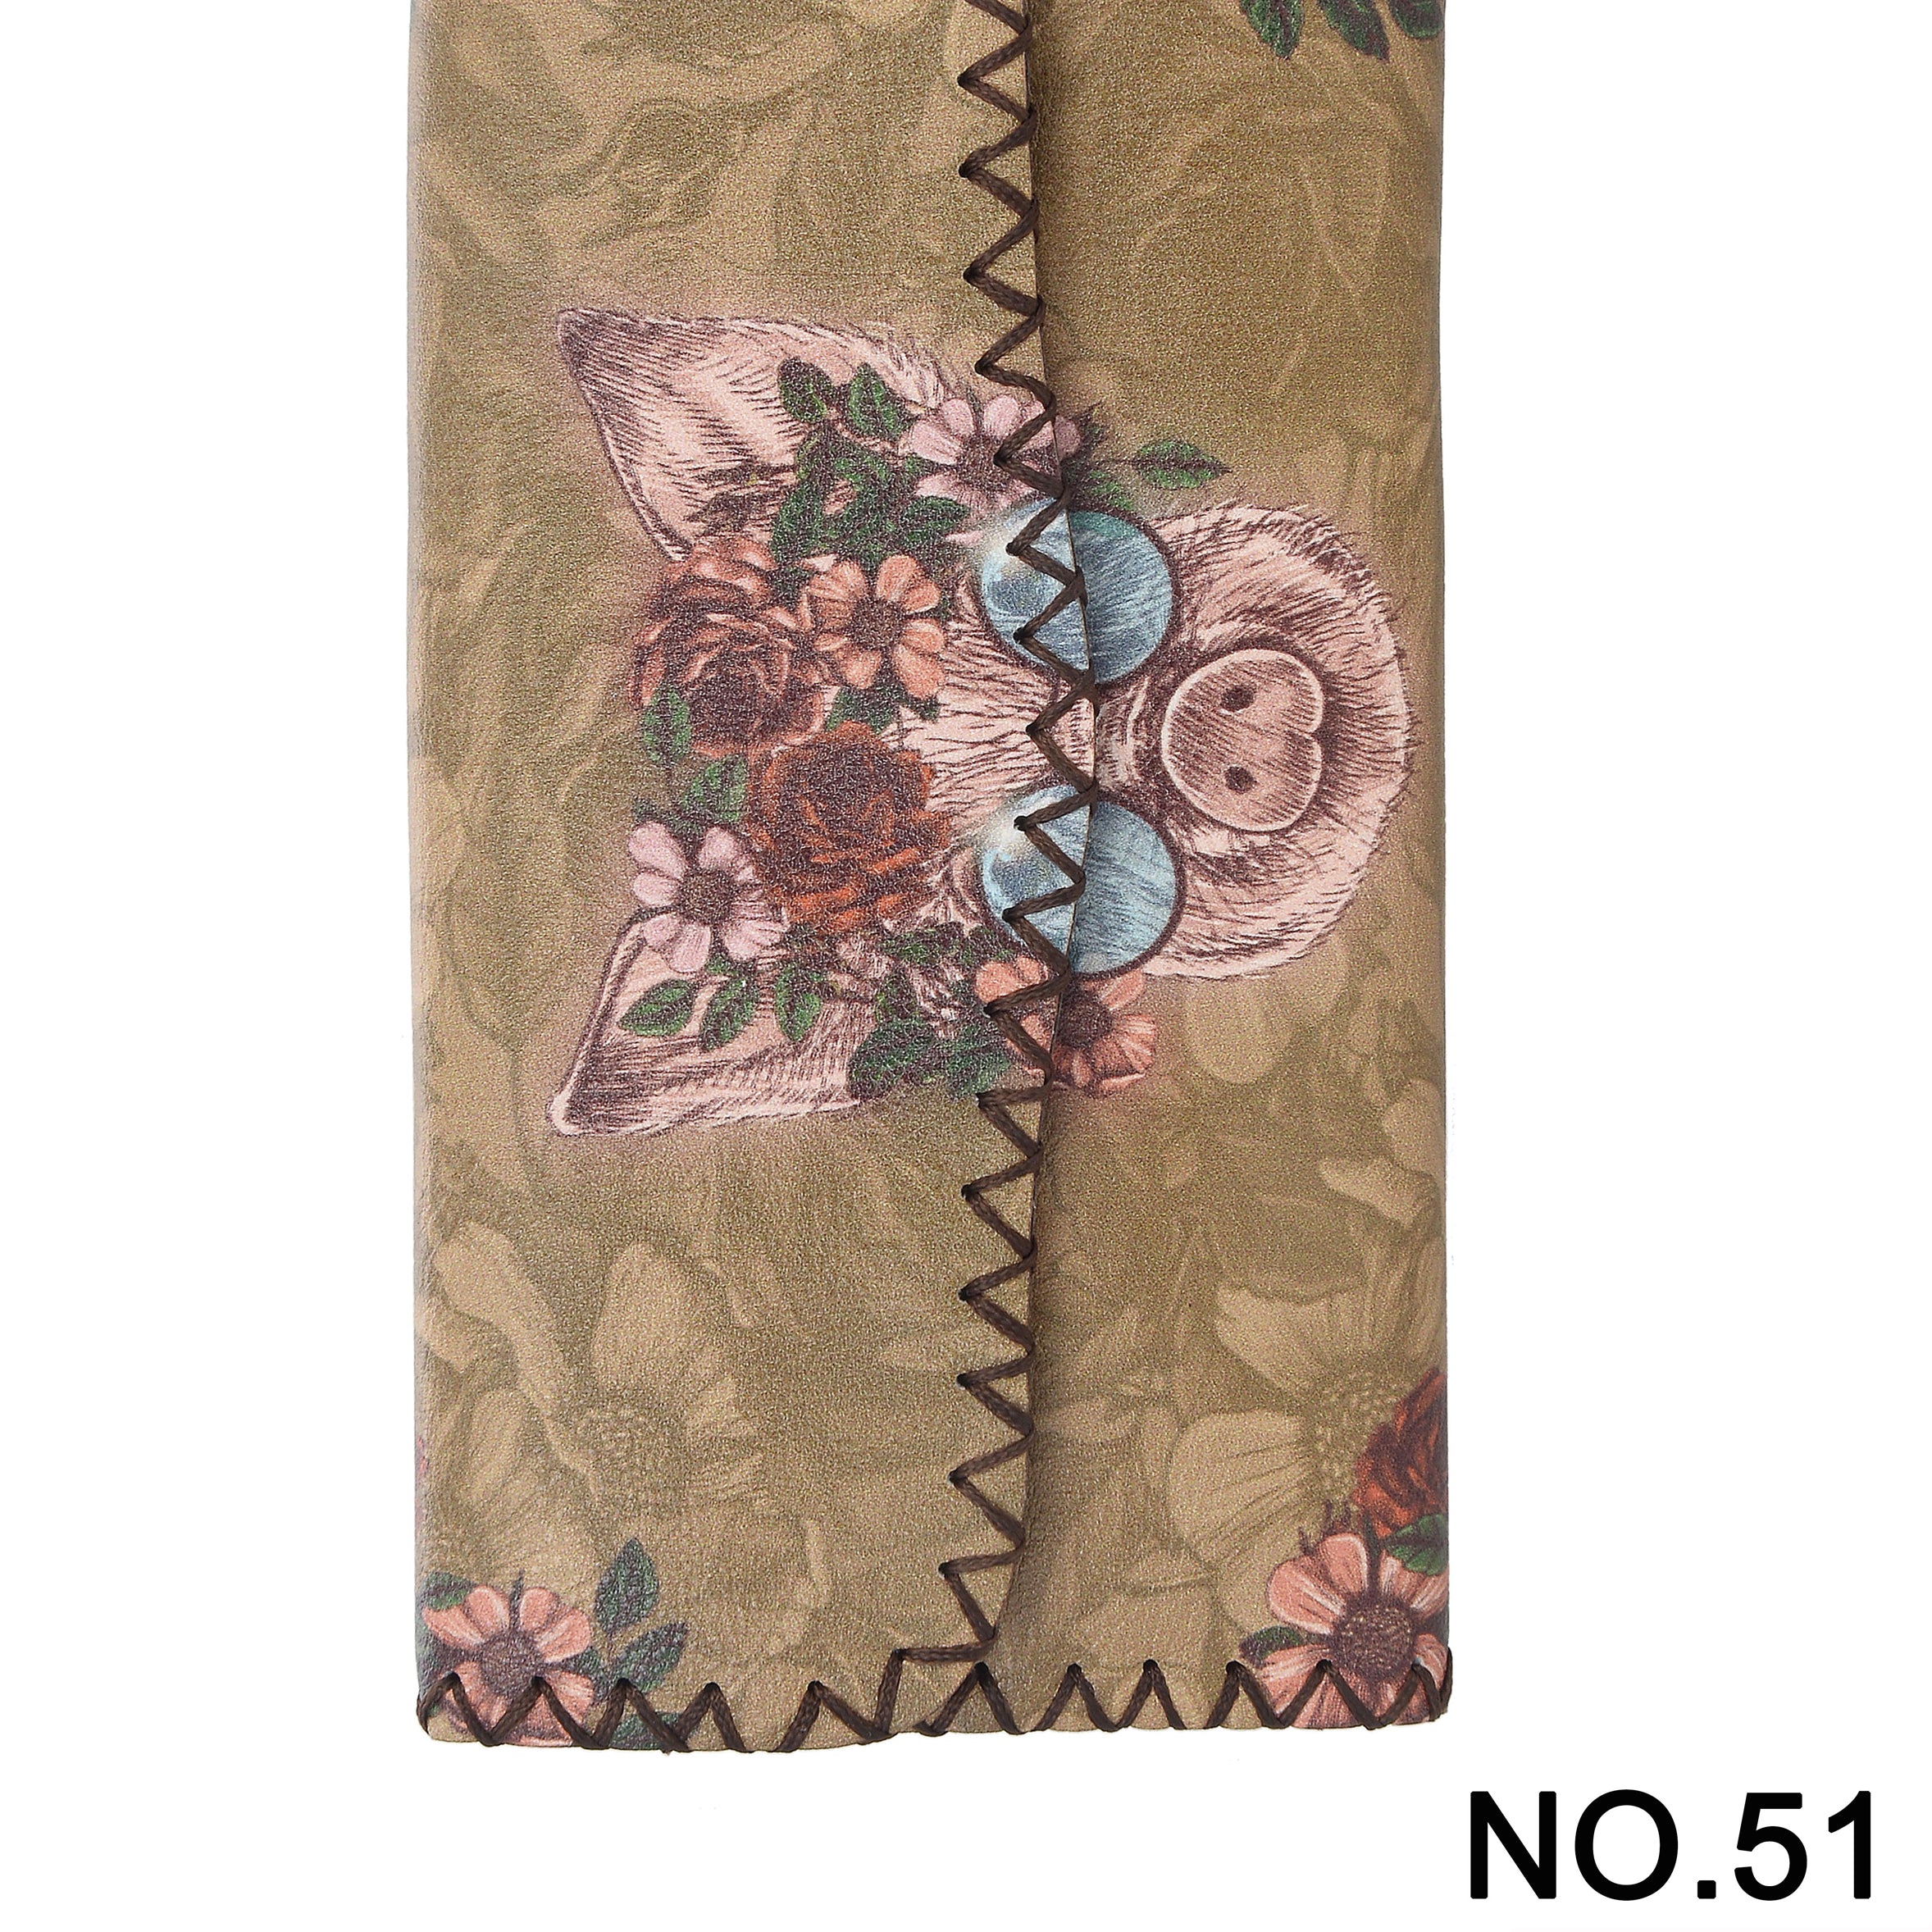 Floral Pig Printed Wallet HB0582 - NO.51